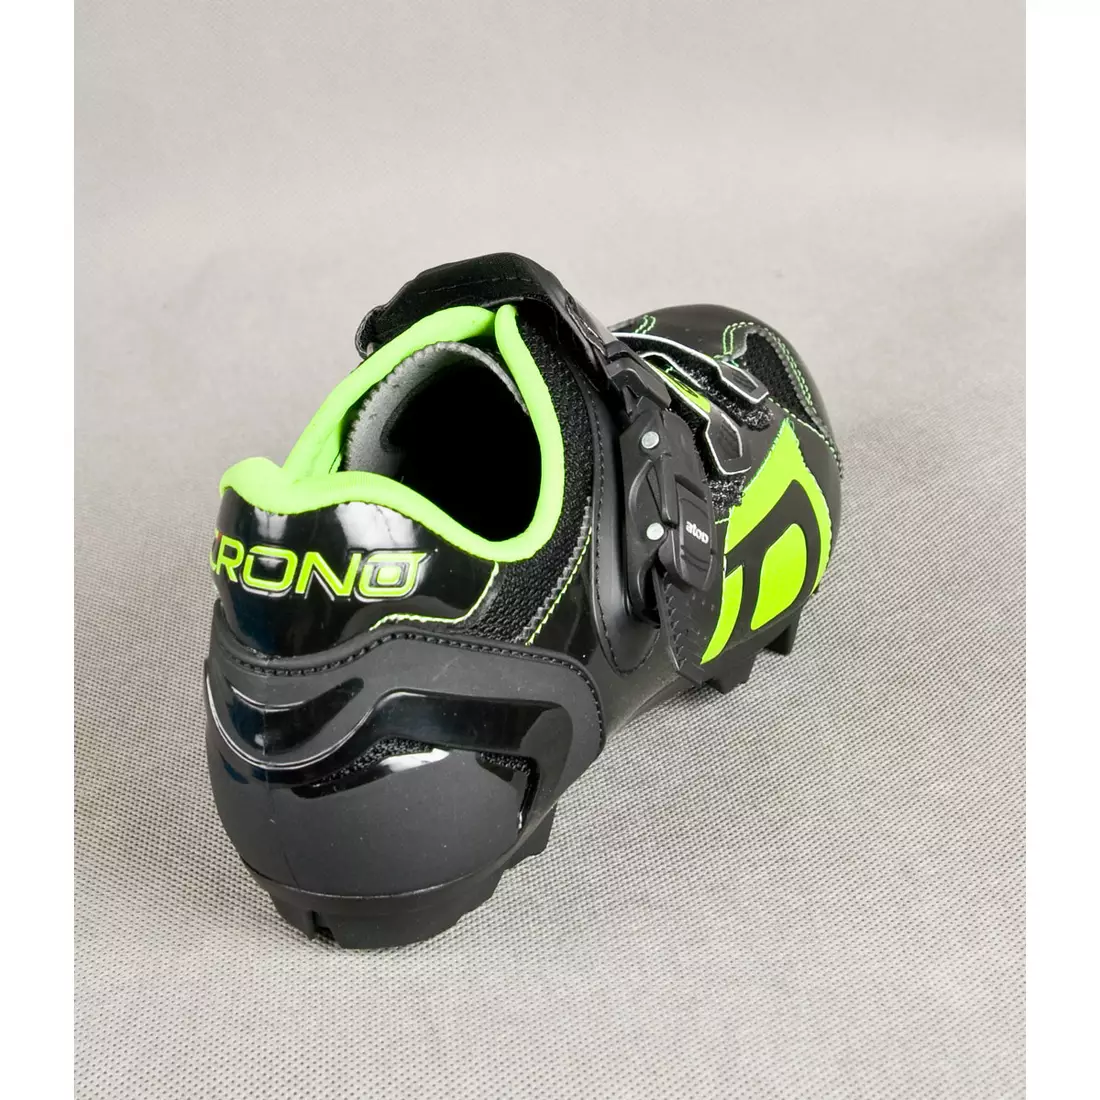 CRONO TRACK - Pantofi de ciclism MTB - culoare: Negru și verde